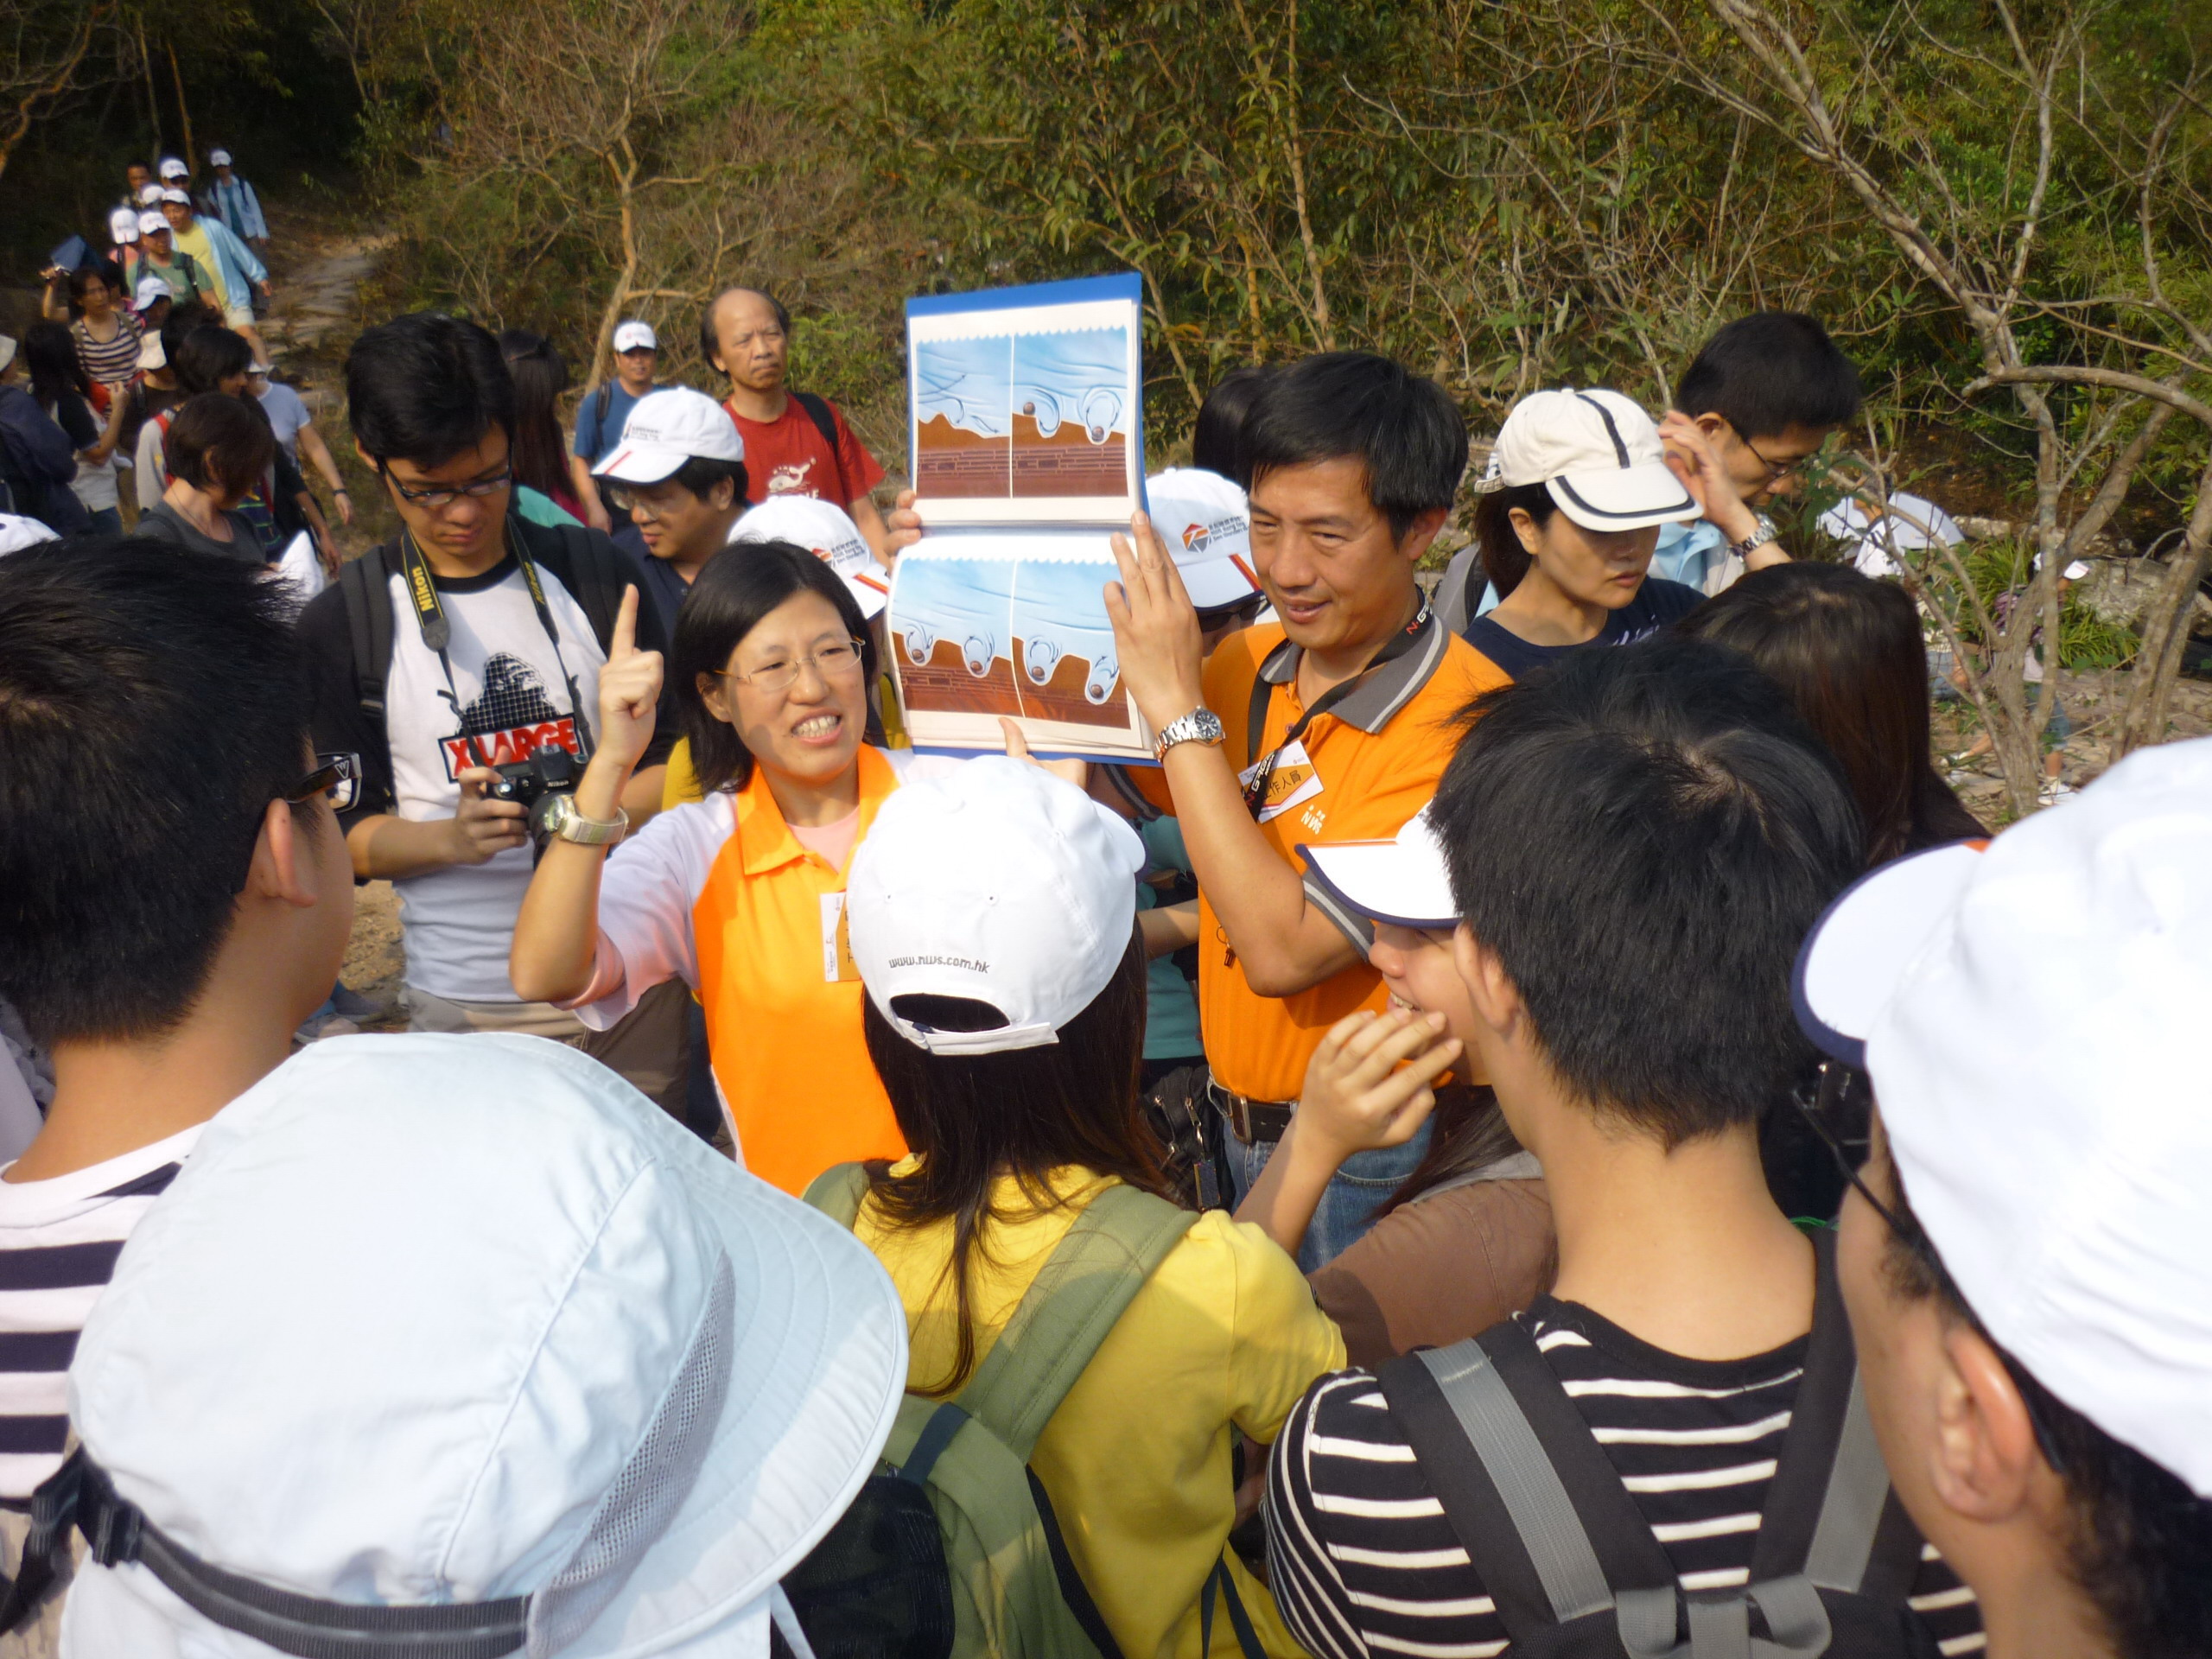 NWS Hong Kong Geo Wonders Hike kicks off its series of events